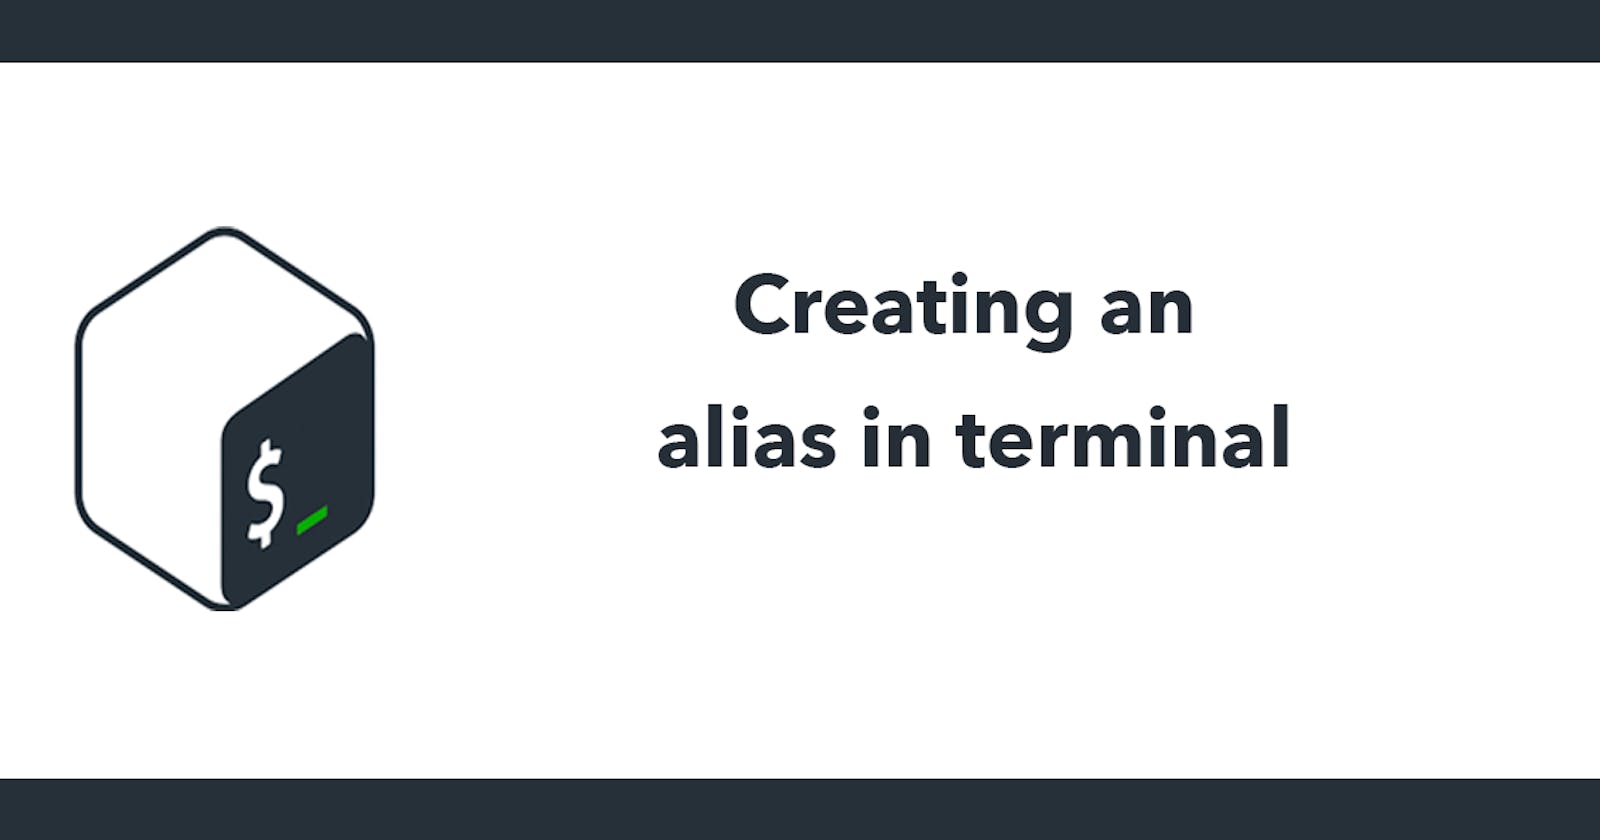 Creating an alias in terminal